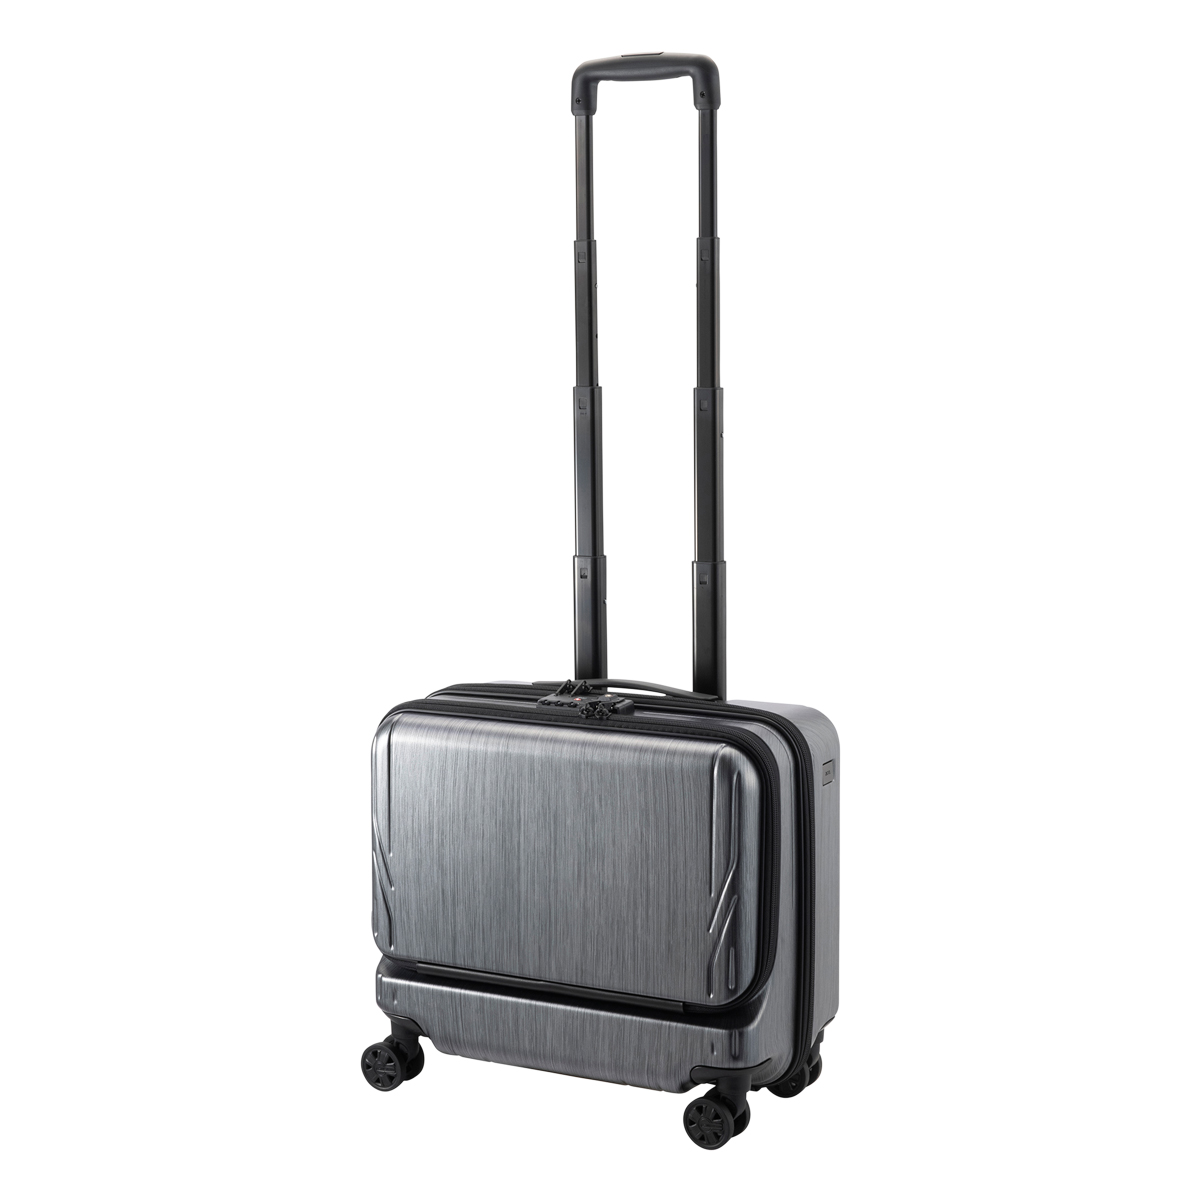 エースジーン スーツケース 26L 3.2kg 40cm 横型 ジェットエクセル 06853 ace.GENE フロントオープン ビジネスキャリー